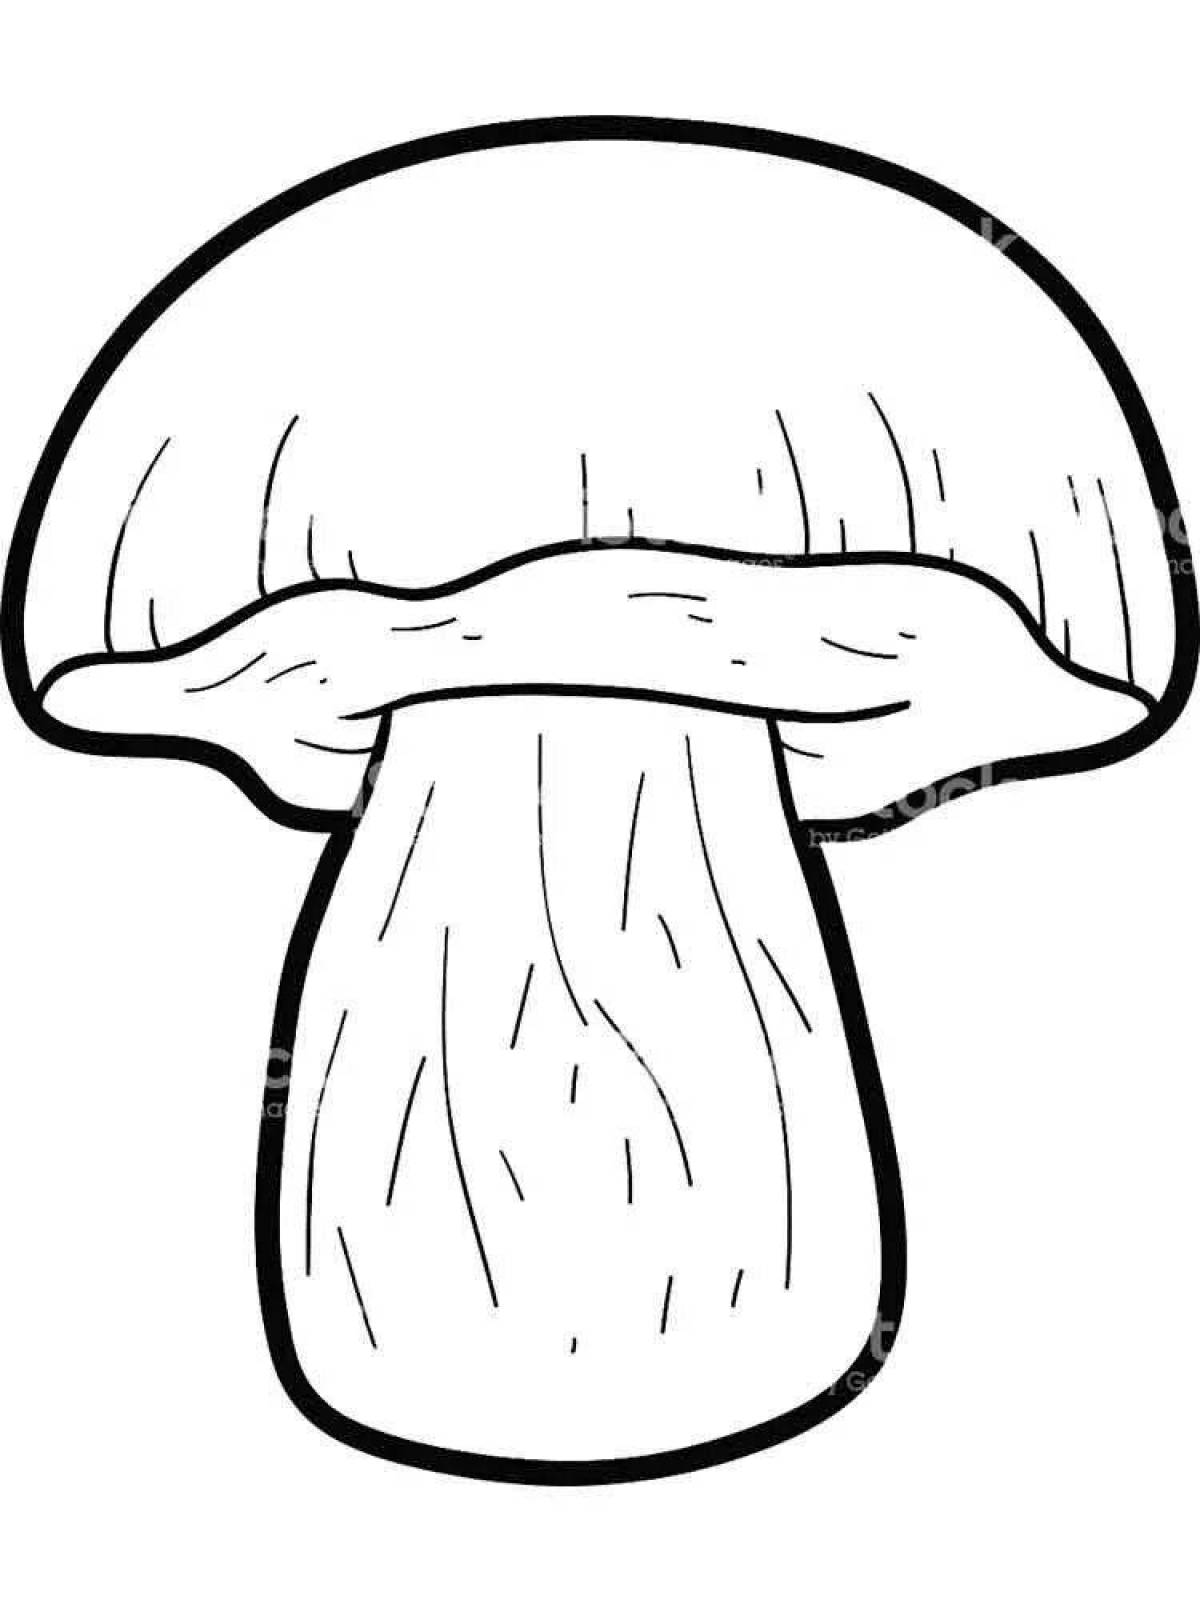 Раскраска стильный гриб боровик